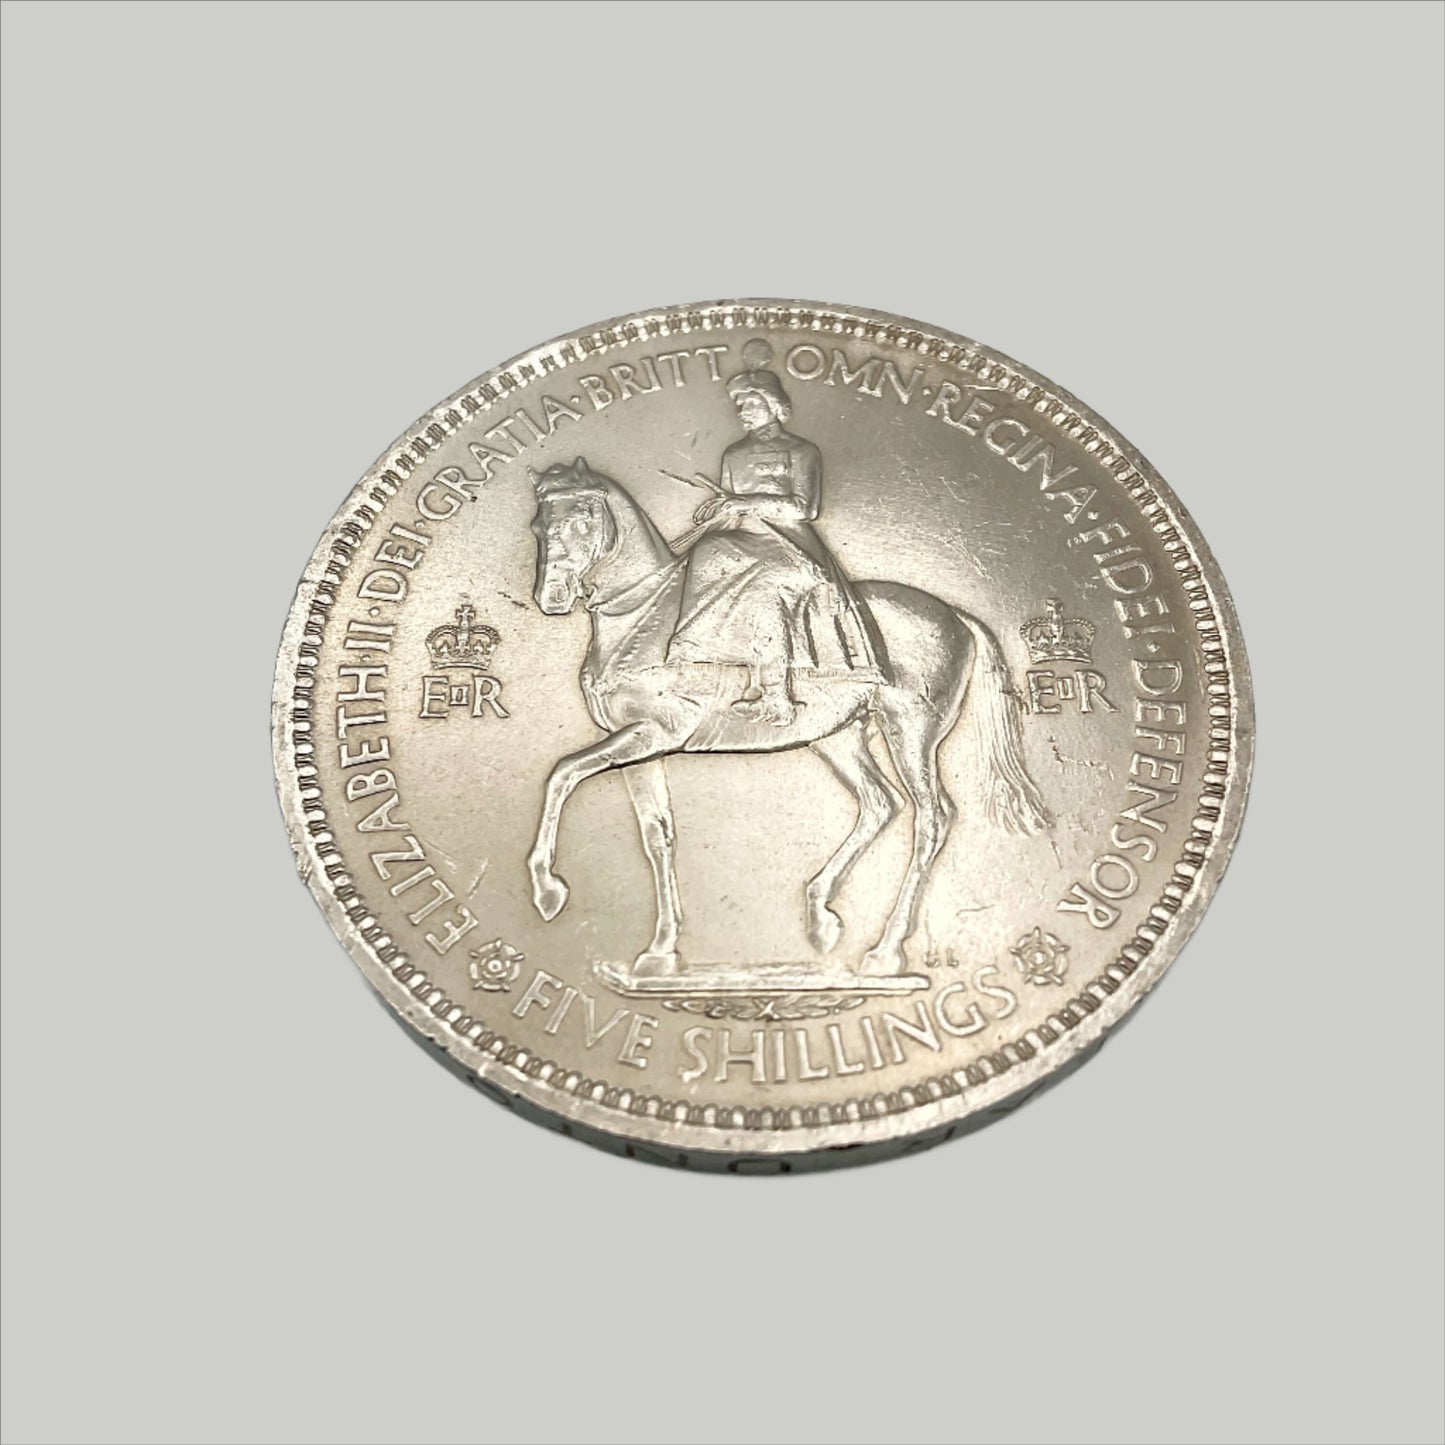 reverse side of 1953 Queen Elizabeth II coronation Coin